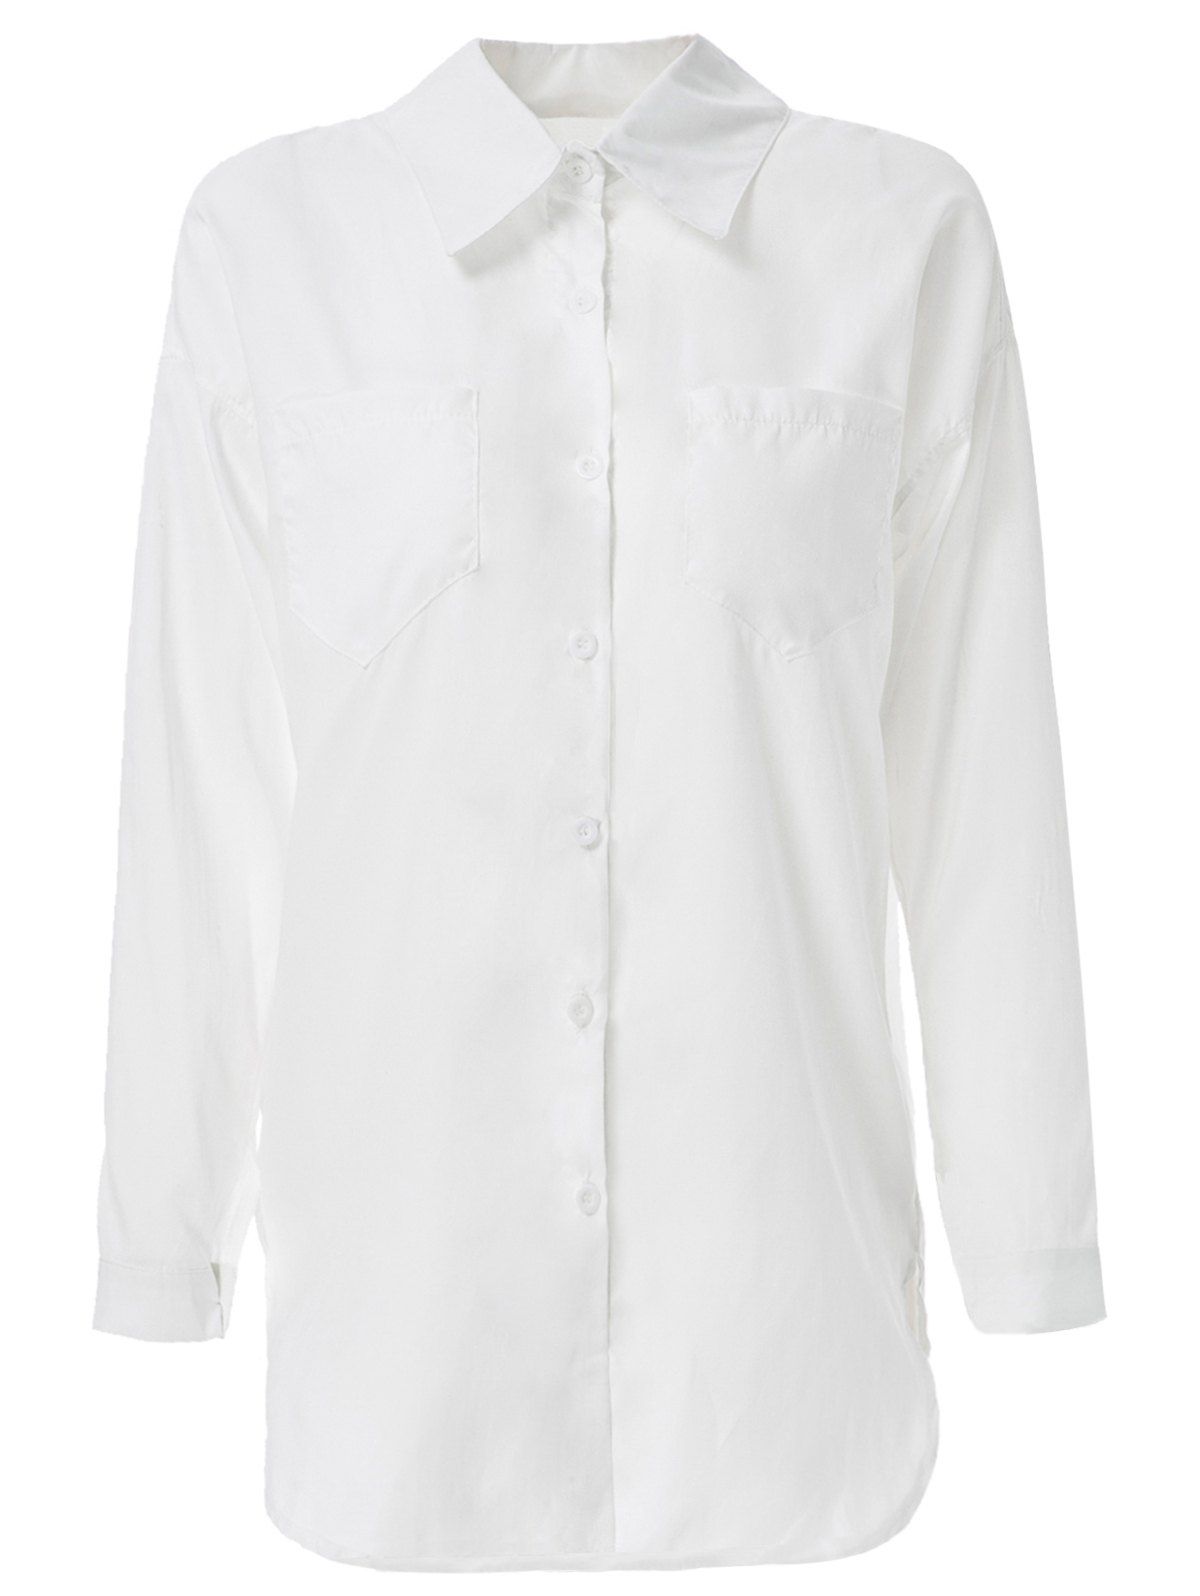 [33% OFF] Long Sleeve Zippered Formal Shirt | Rosegal